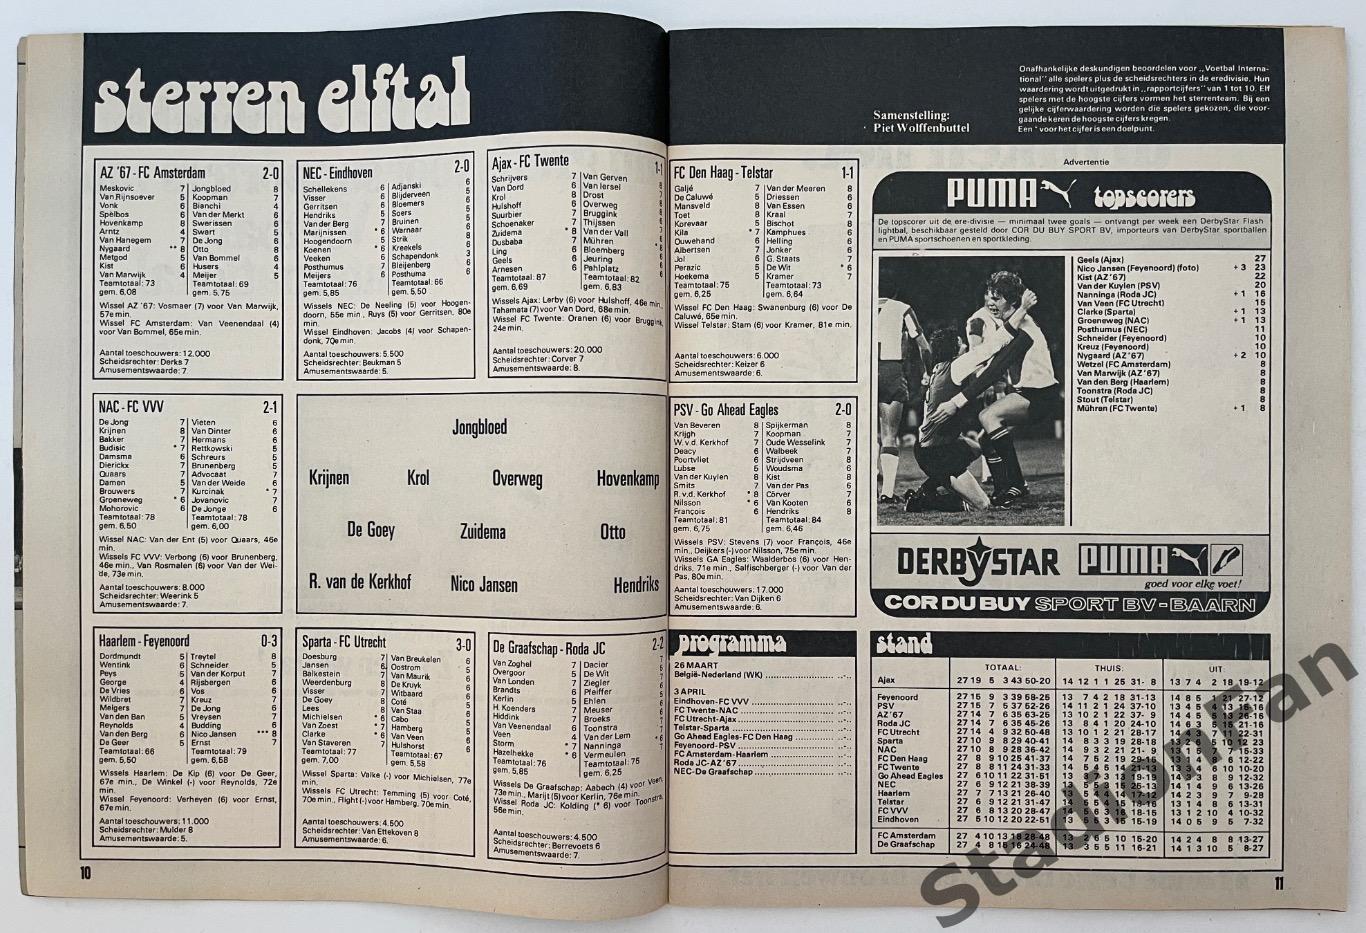 Журнал Voetbal nr.12 - 1977 год. 2